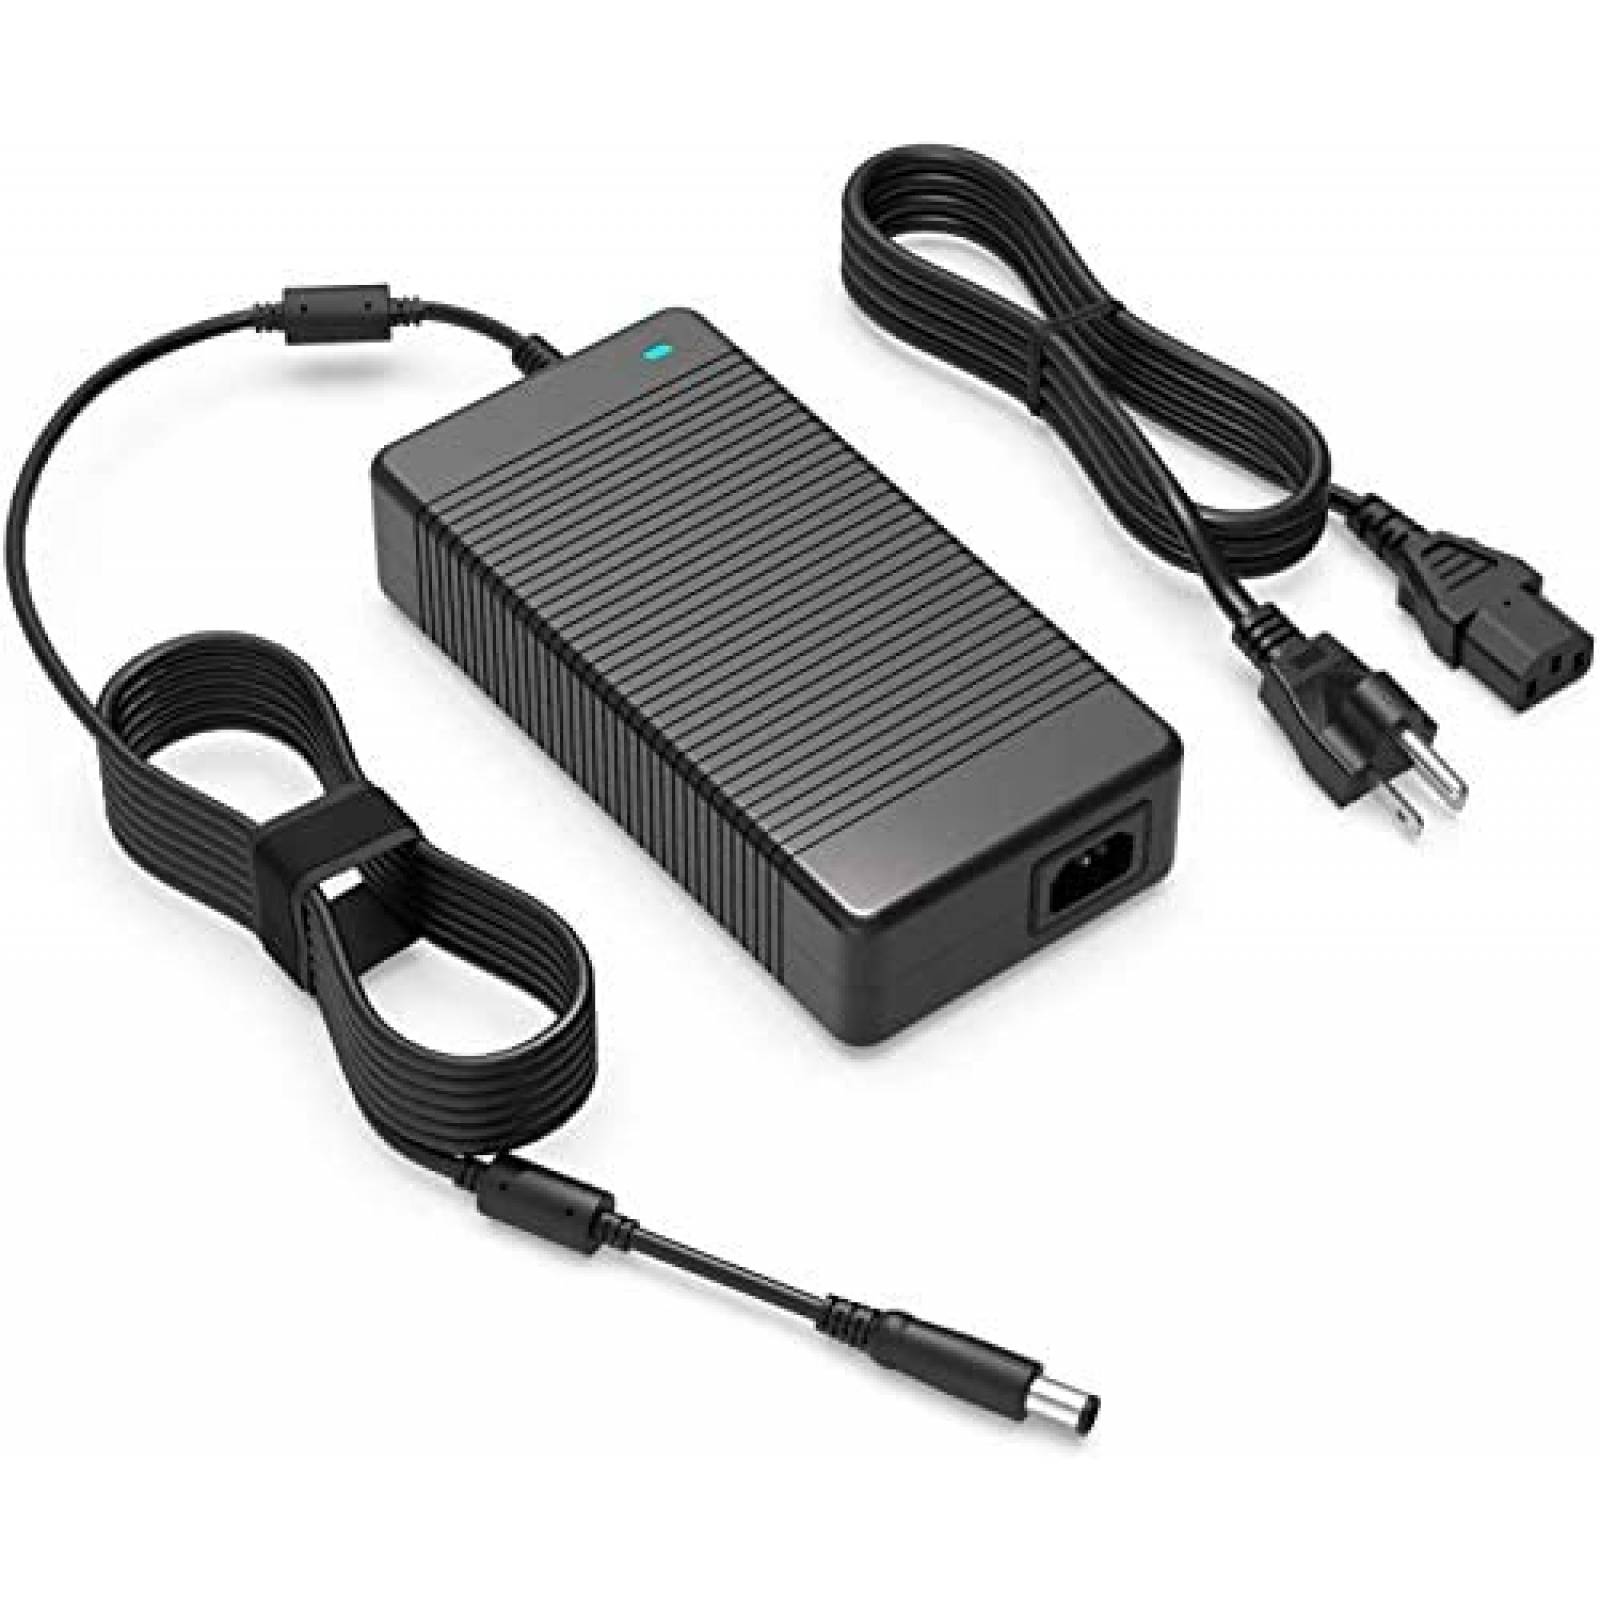 Blanco y Negro Cable Micro USB 3A 1M Igo